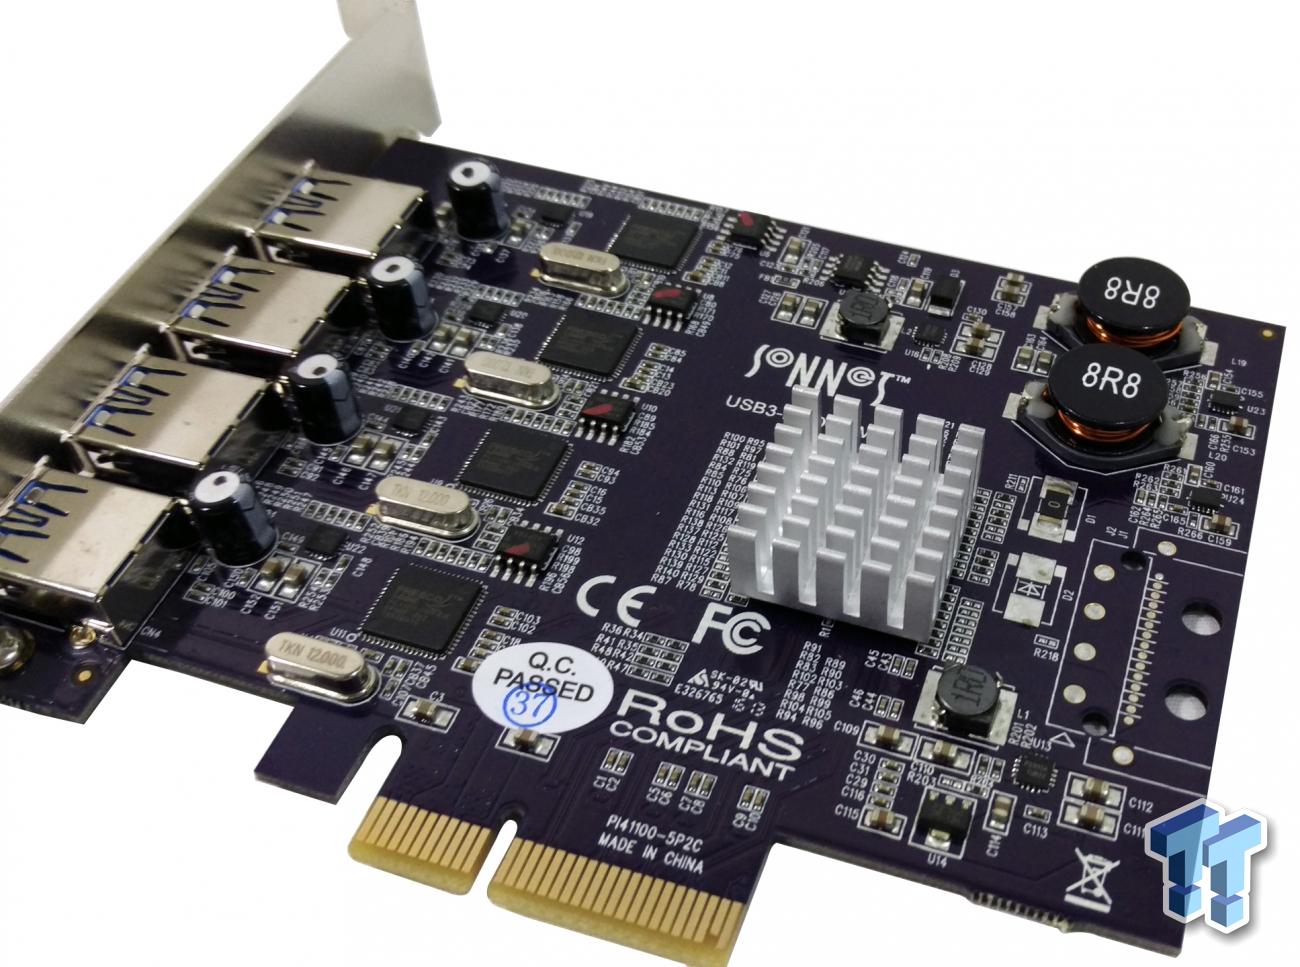 Sonnet Allegro Pro Four-Port USB 3.0 PCIe Card Review